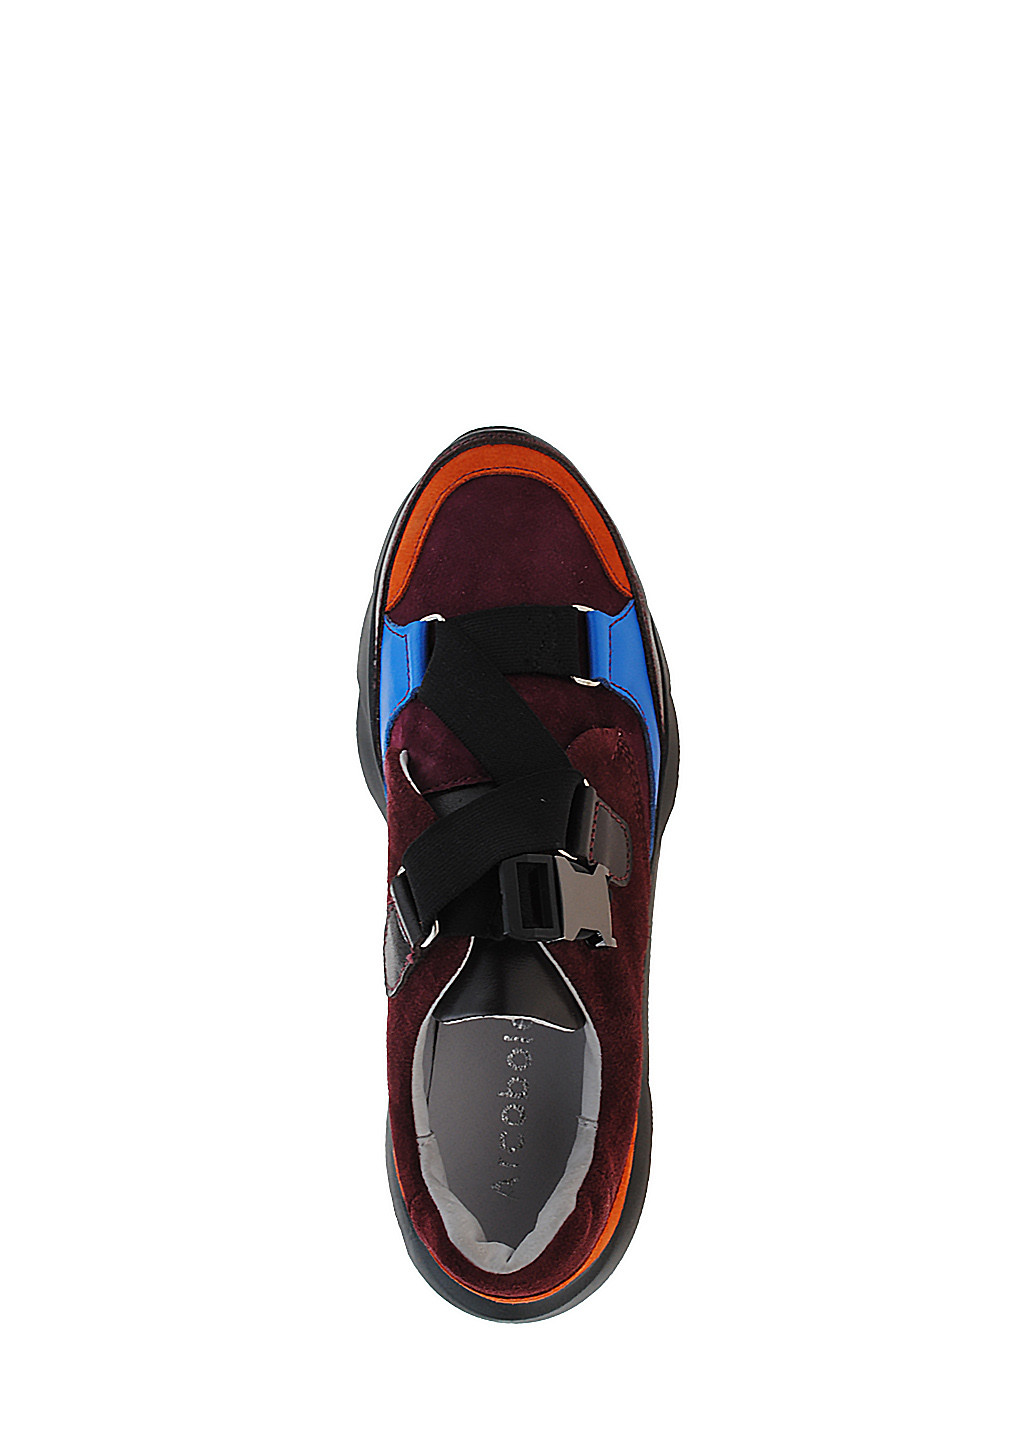 Бордовые демисезонные кроссовки r033-26 бордовый-оранжевый Arcoboletto